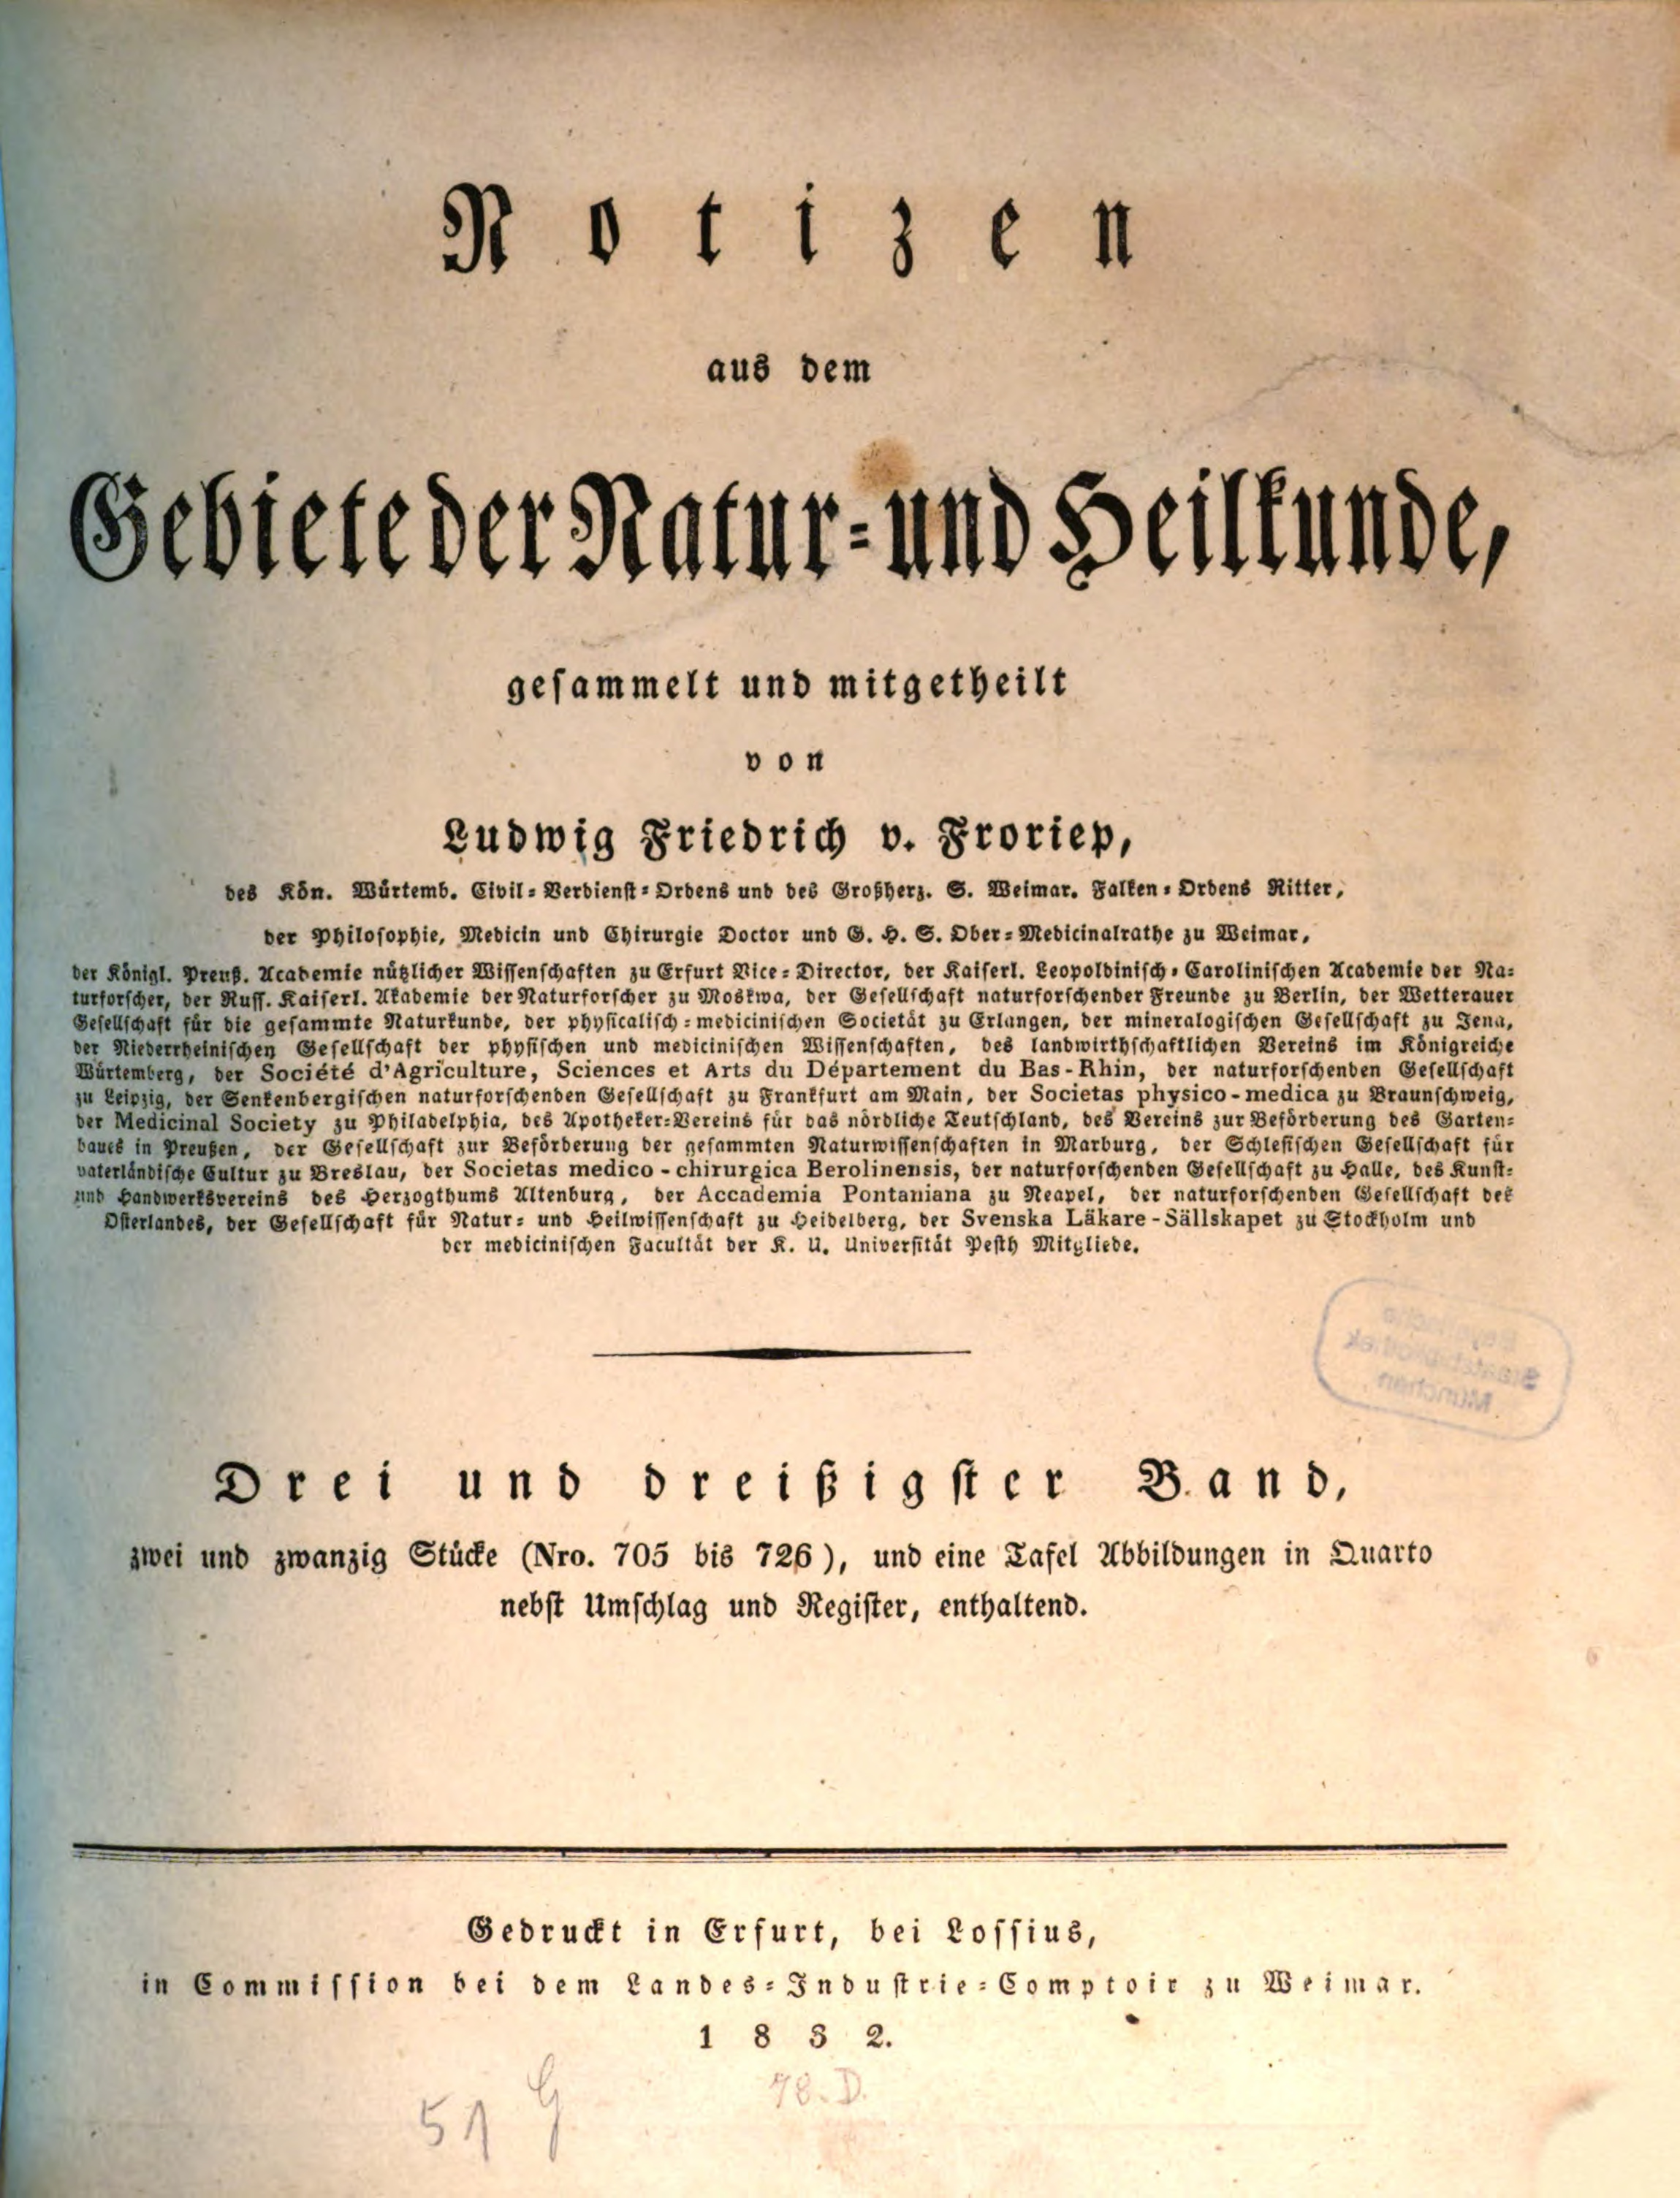 Froriep, Notizen aus dem Gebiete der Natur- und Heilkunde, 1832.